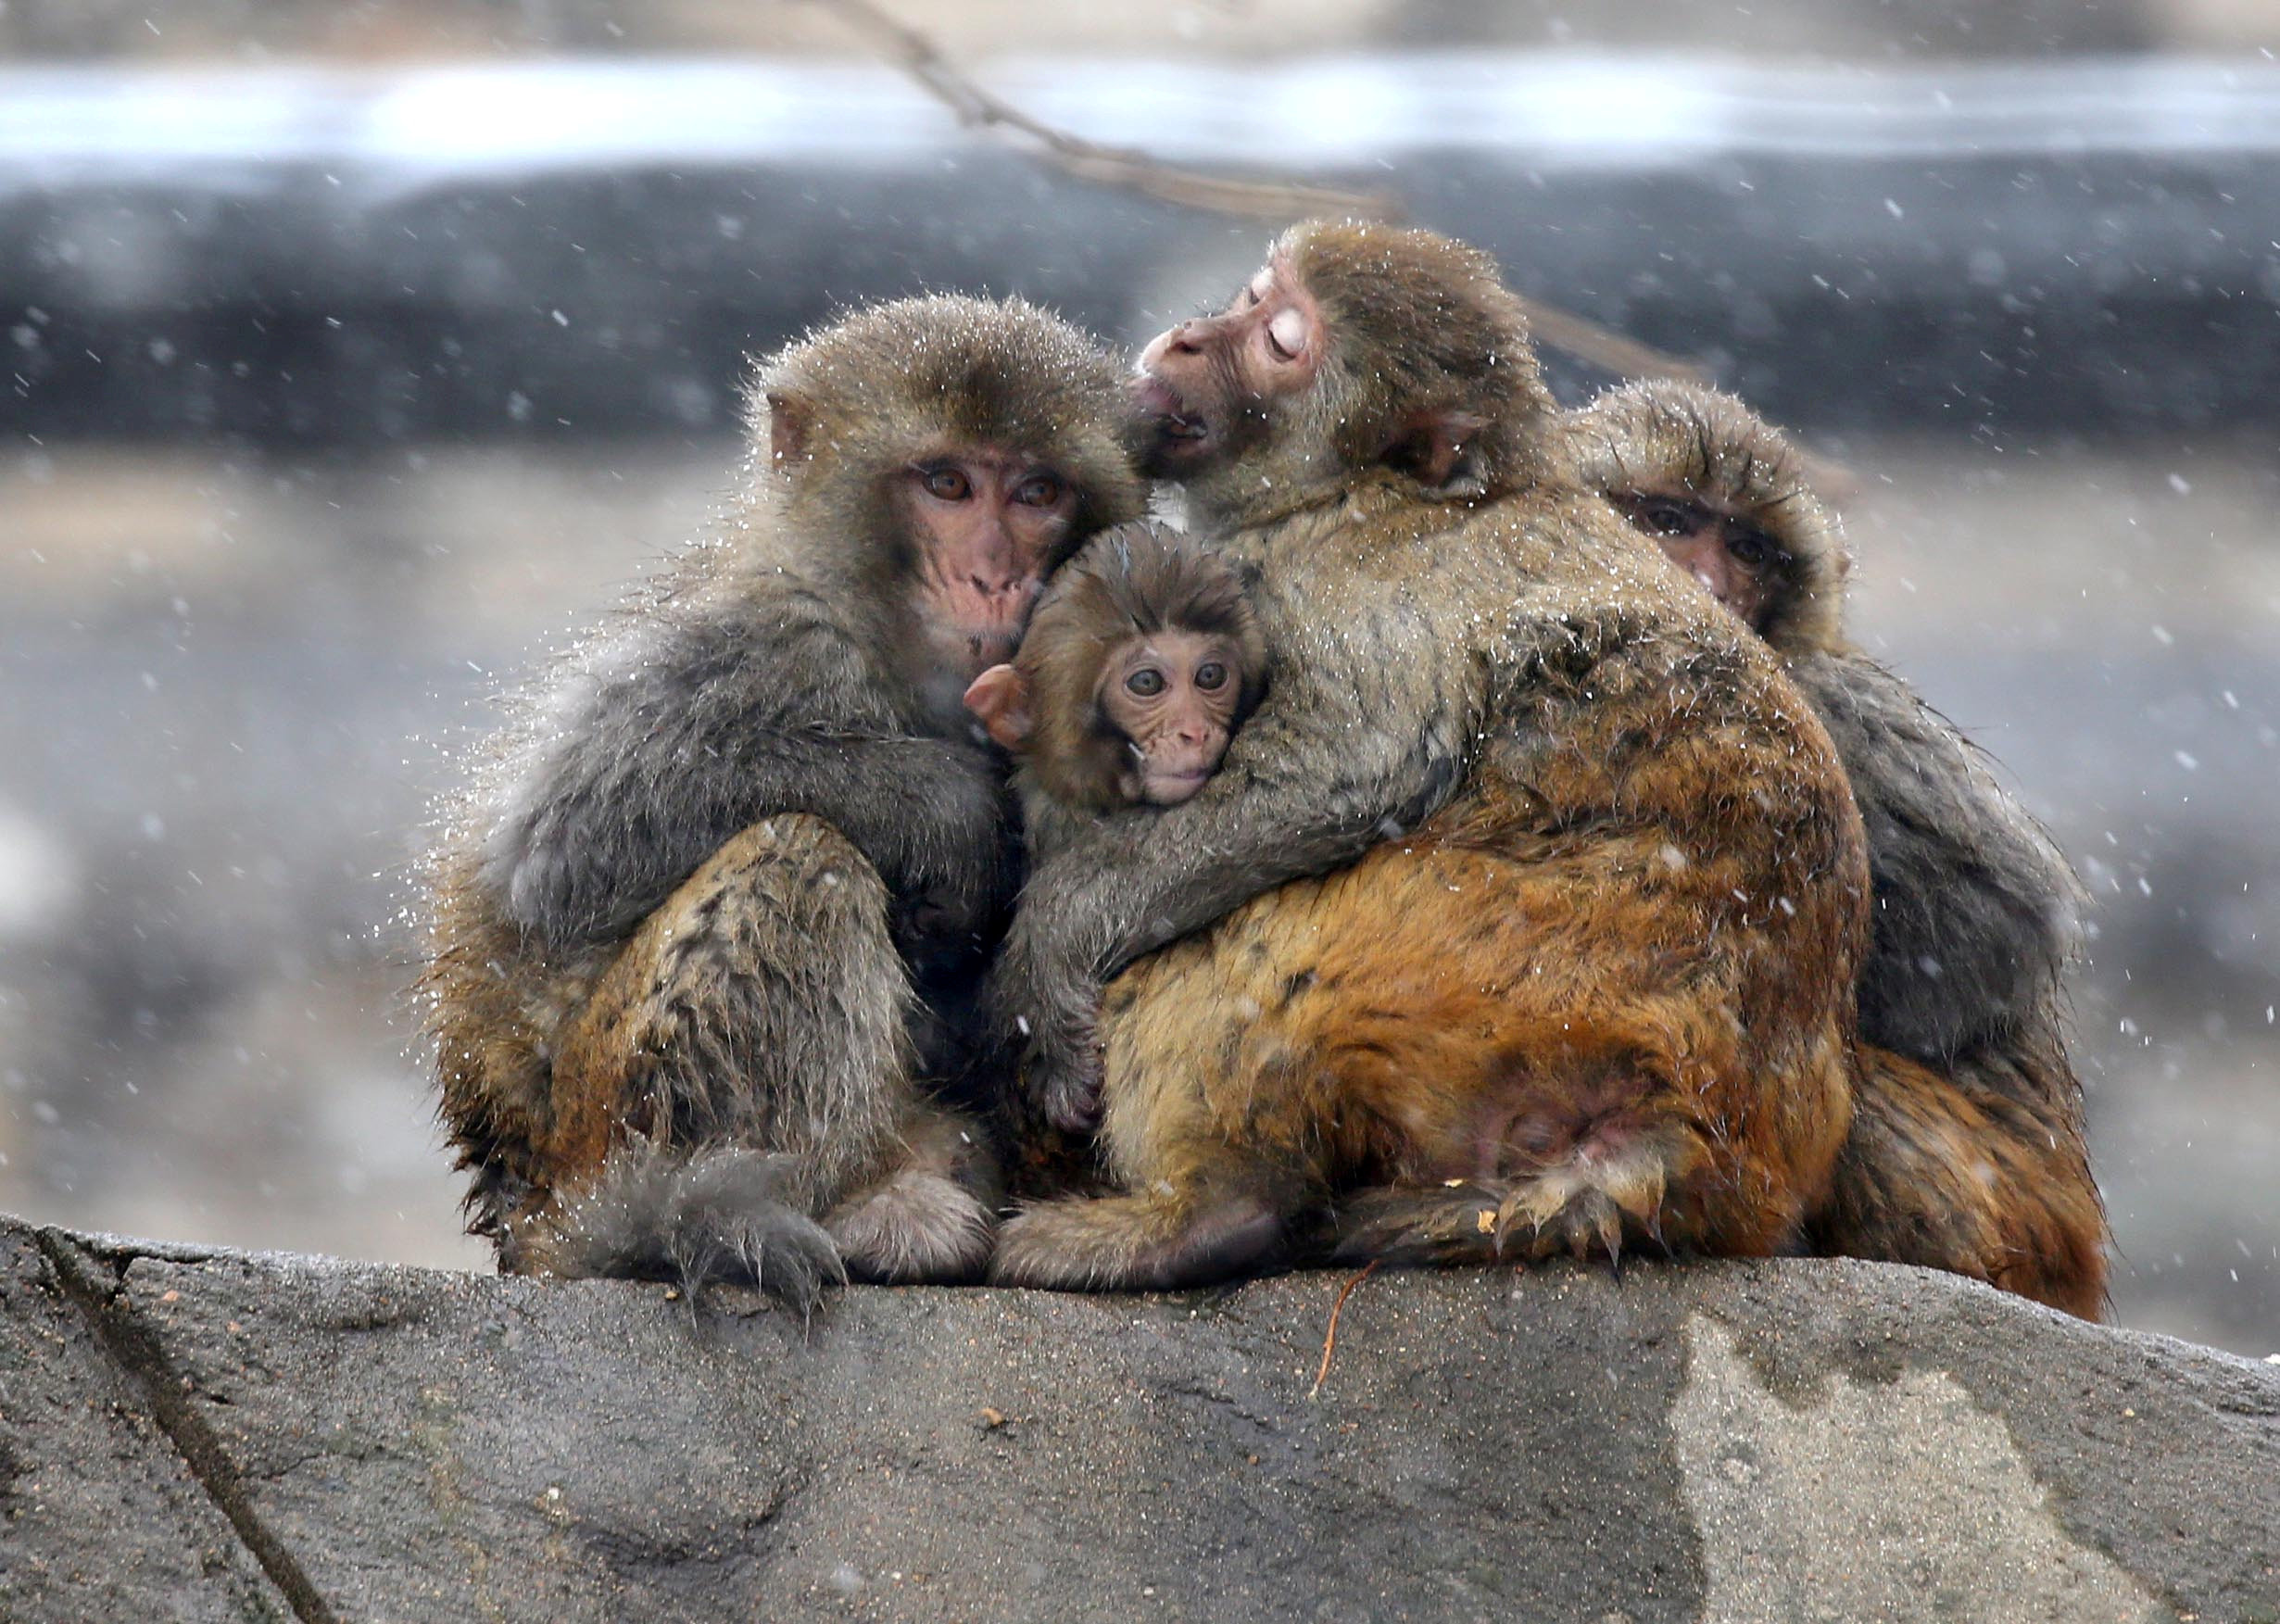 Βρετανία: 13 μαϊμούδες σκοτώθηκαν από πυρκαγιά σε πάρκο σαφάρι